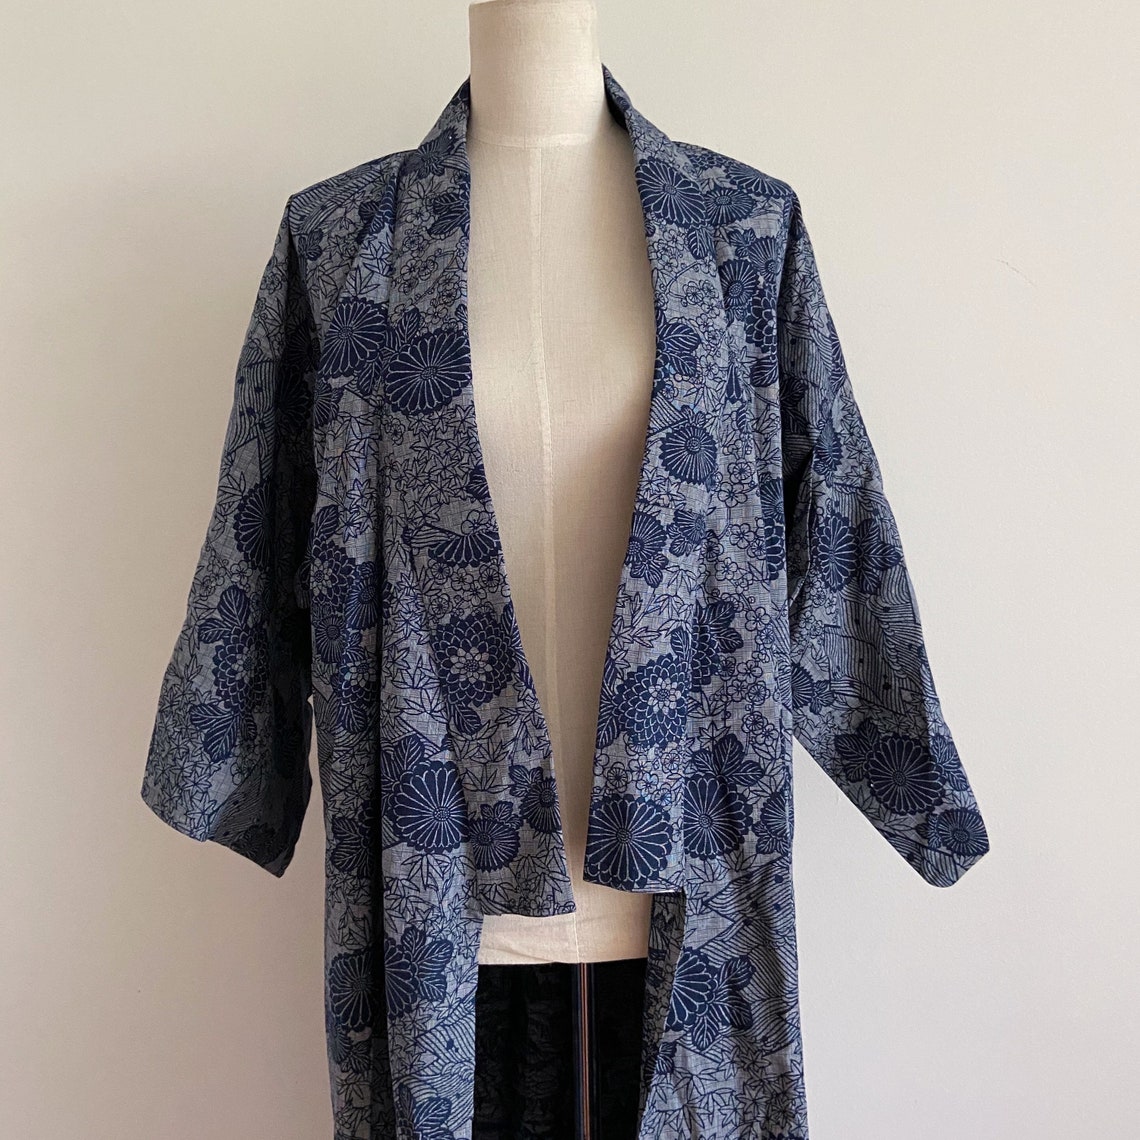 Vintage blue kimono cotton boho bohemian print kimono robe | Etsy